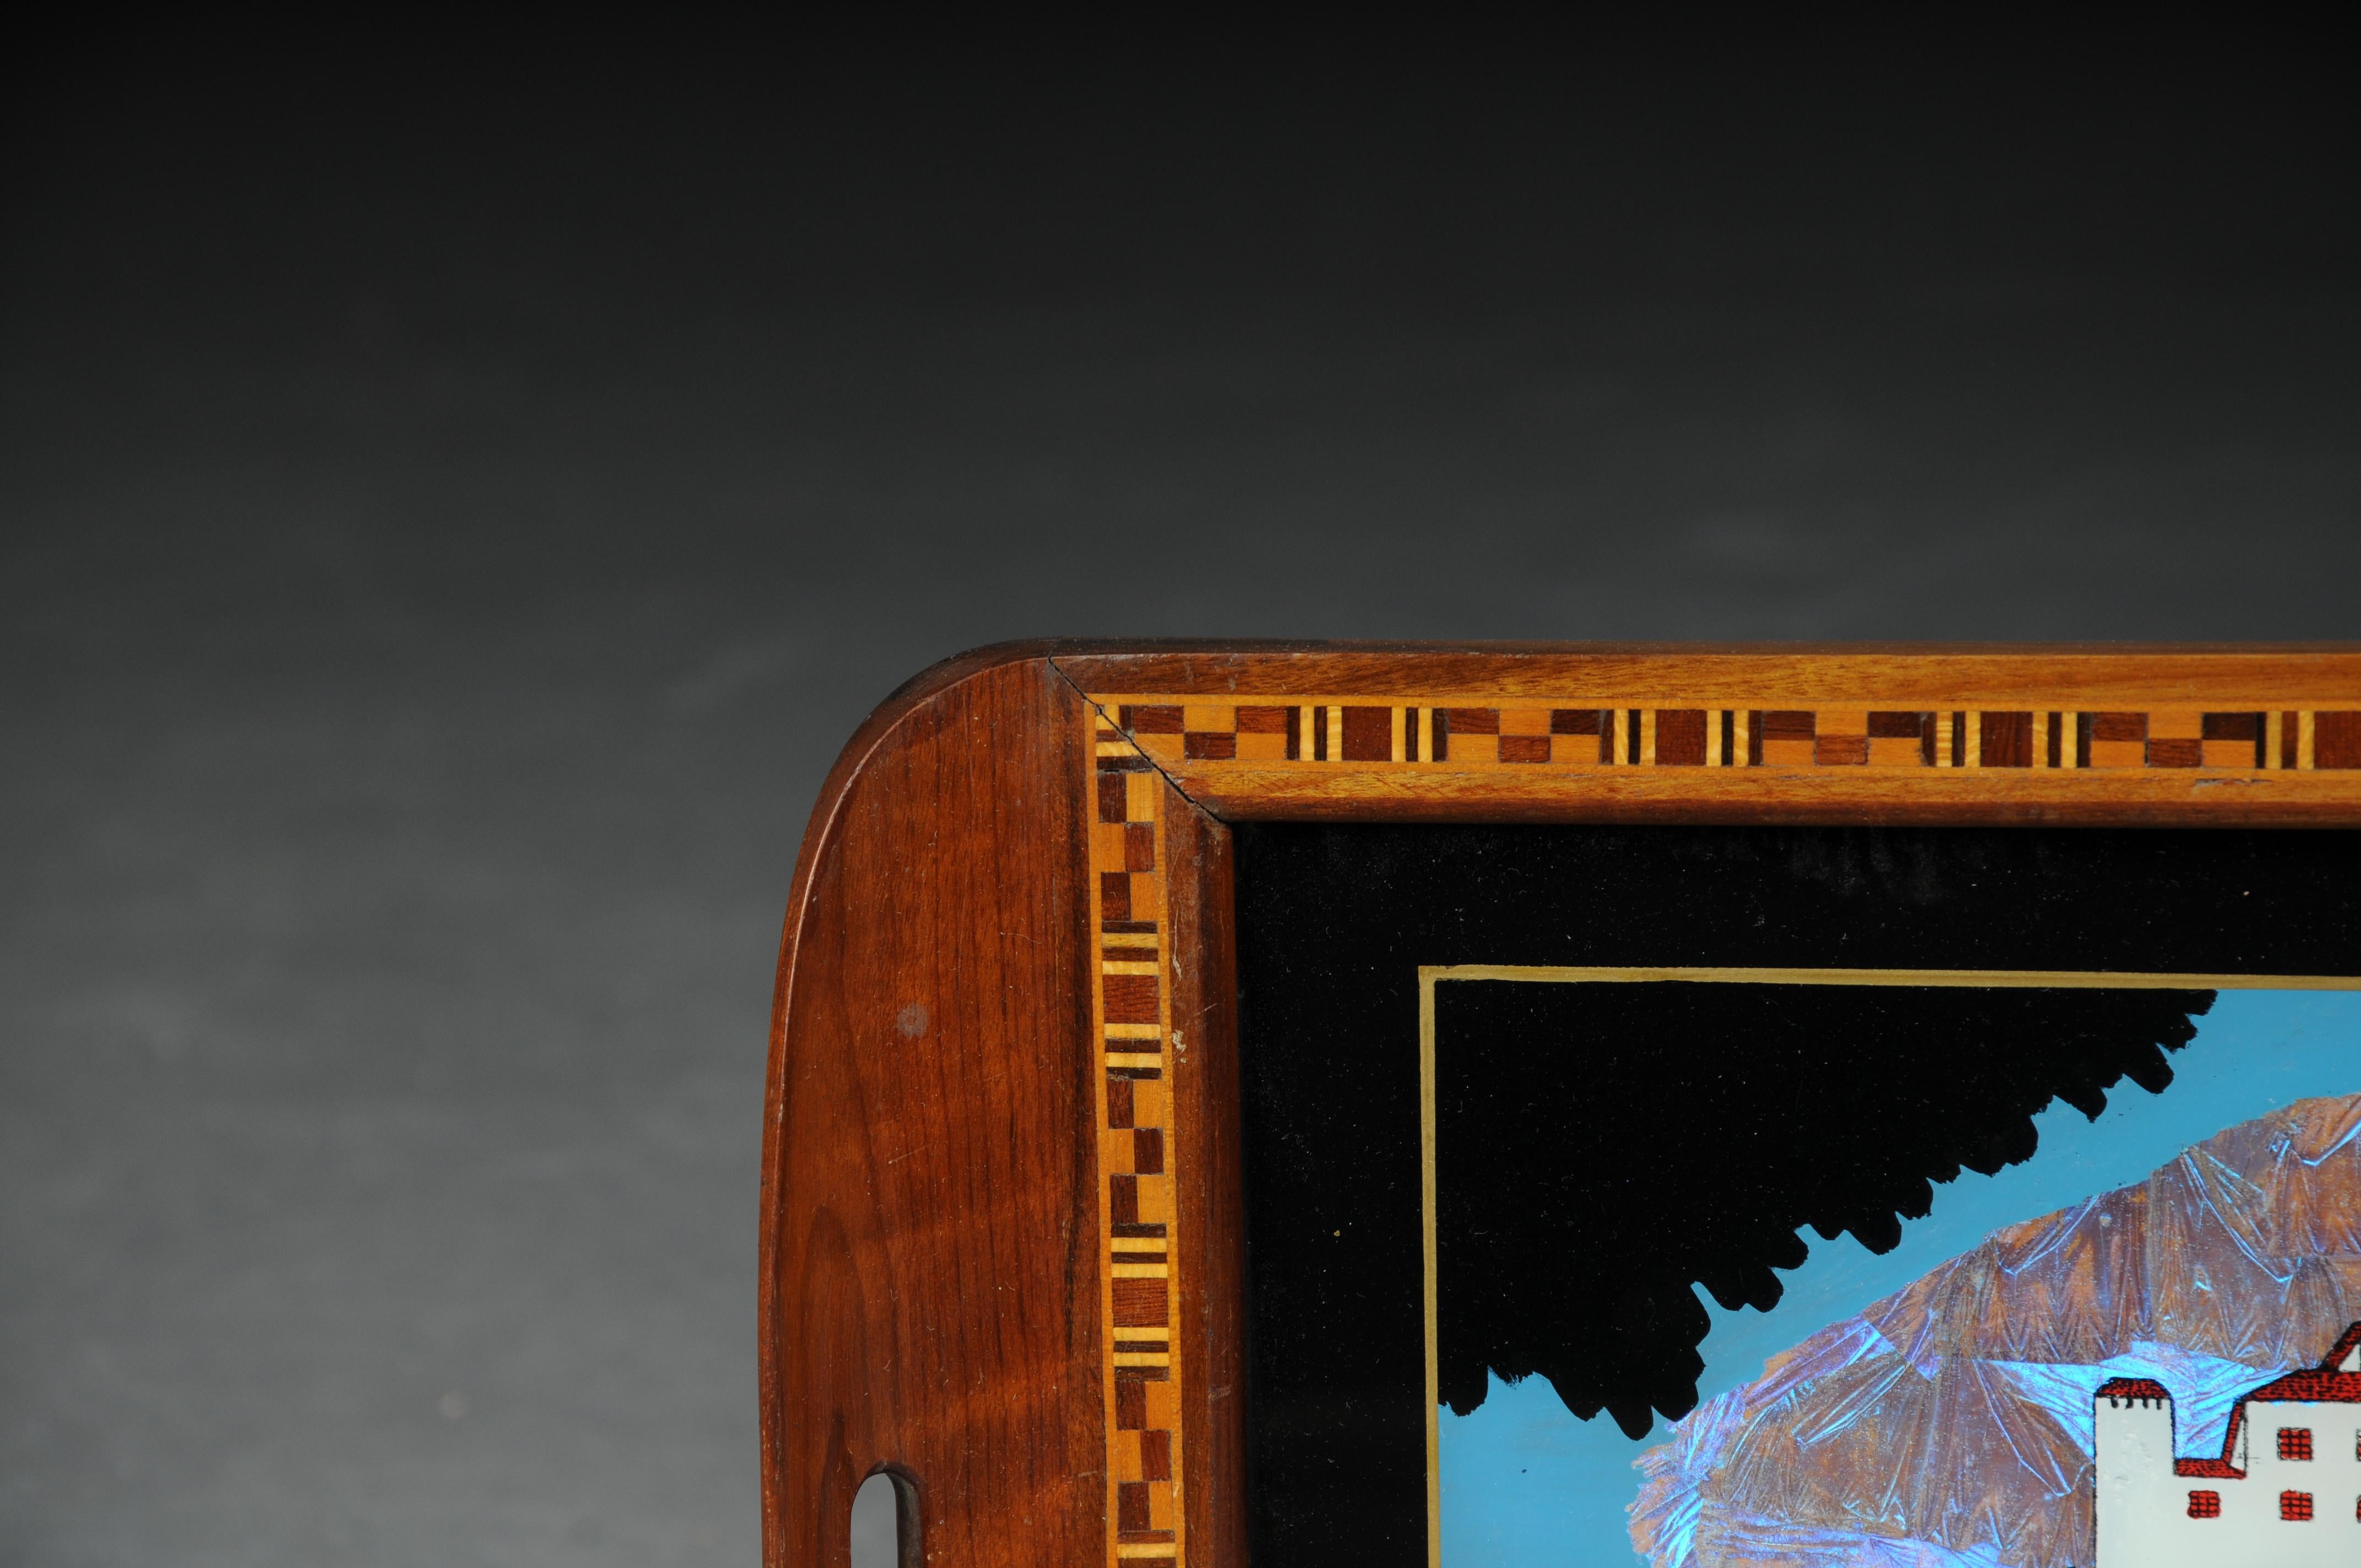 Kurioses antikes Tablett mit echten Schmetterlingsflügeln, Brasilien

Rahmen aus Massivholz mit Intarsieneinlagen. In der Mitte eine Landschaft des weltberühmten Klosters
